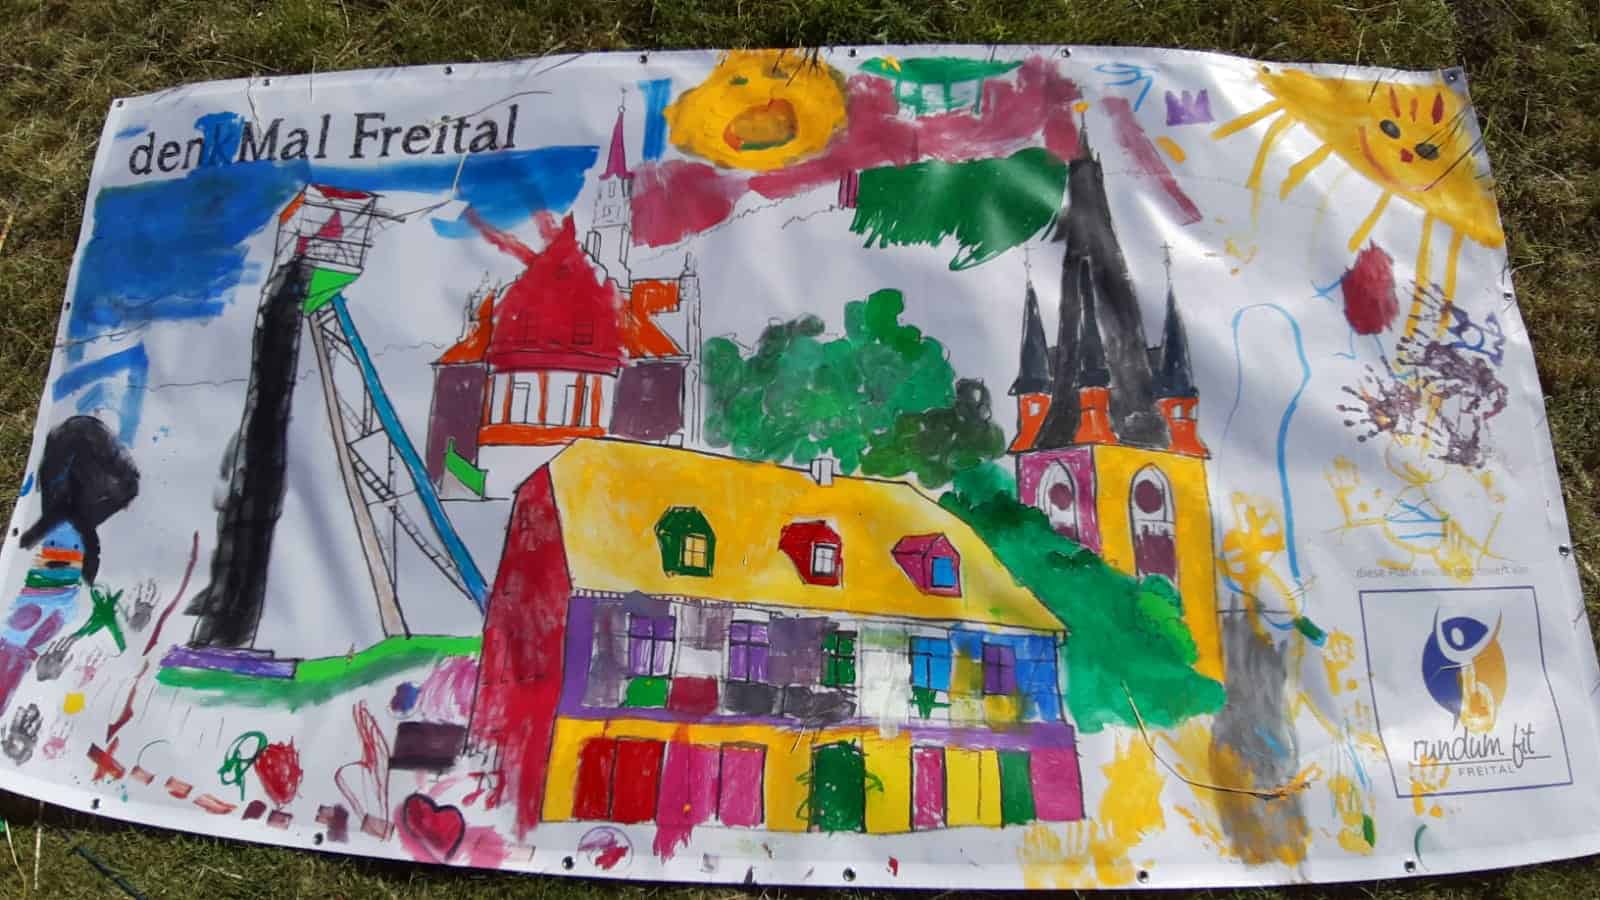 Kinder malen die Plane von RundumFit Freital aus